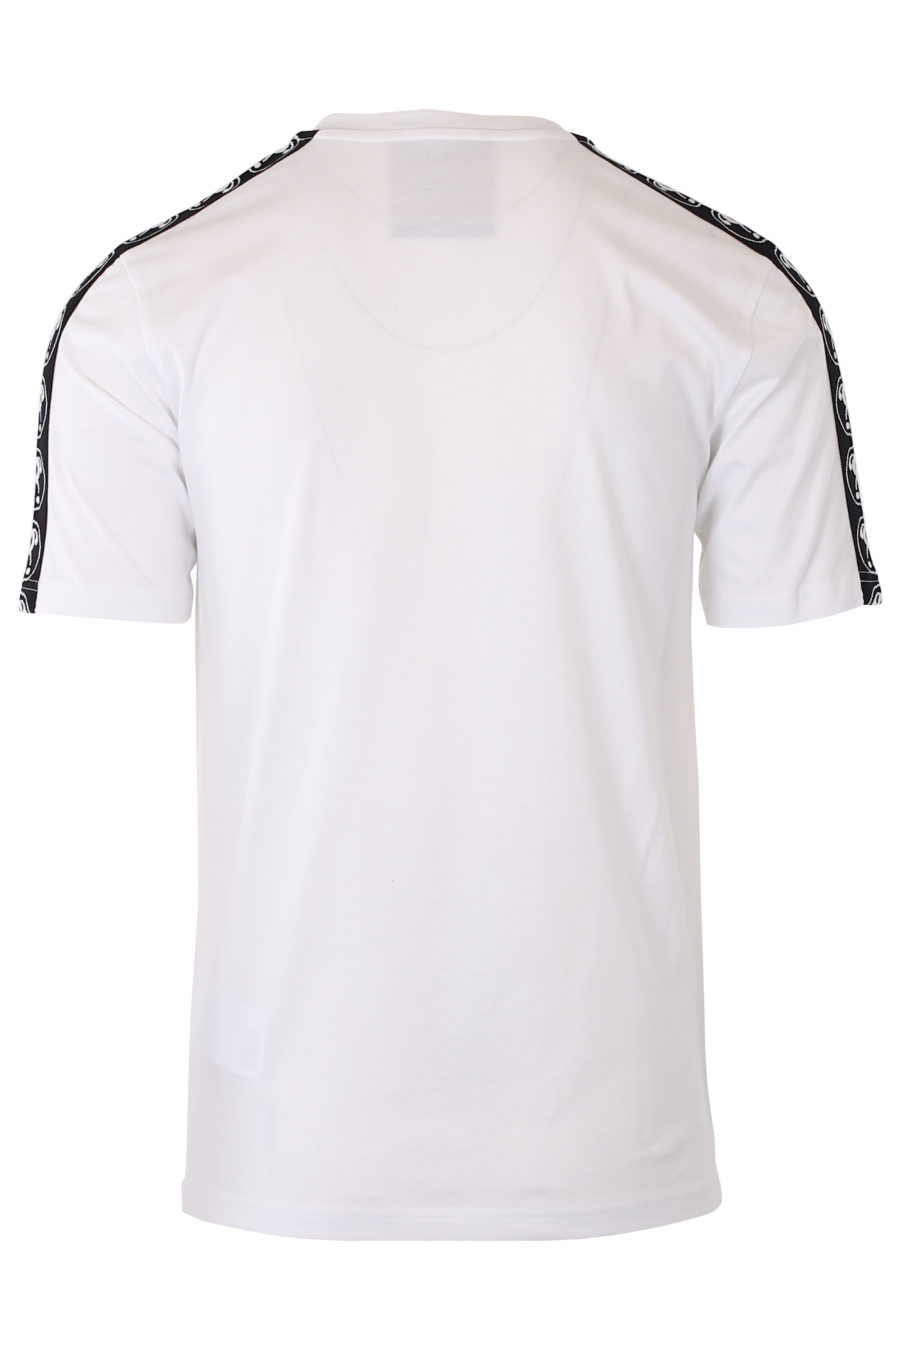 T-shirt blanc avec petit logo à double question et ruban adhésif sur les manches - IMG 9333